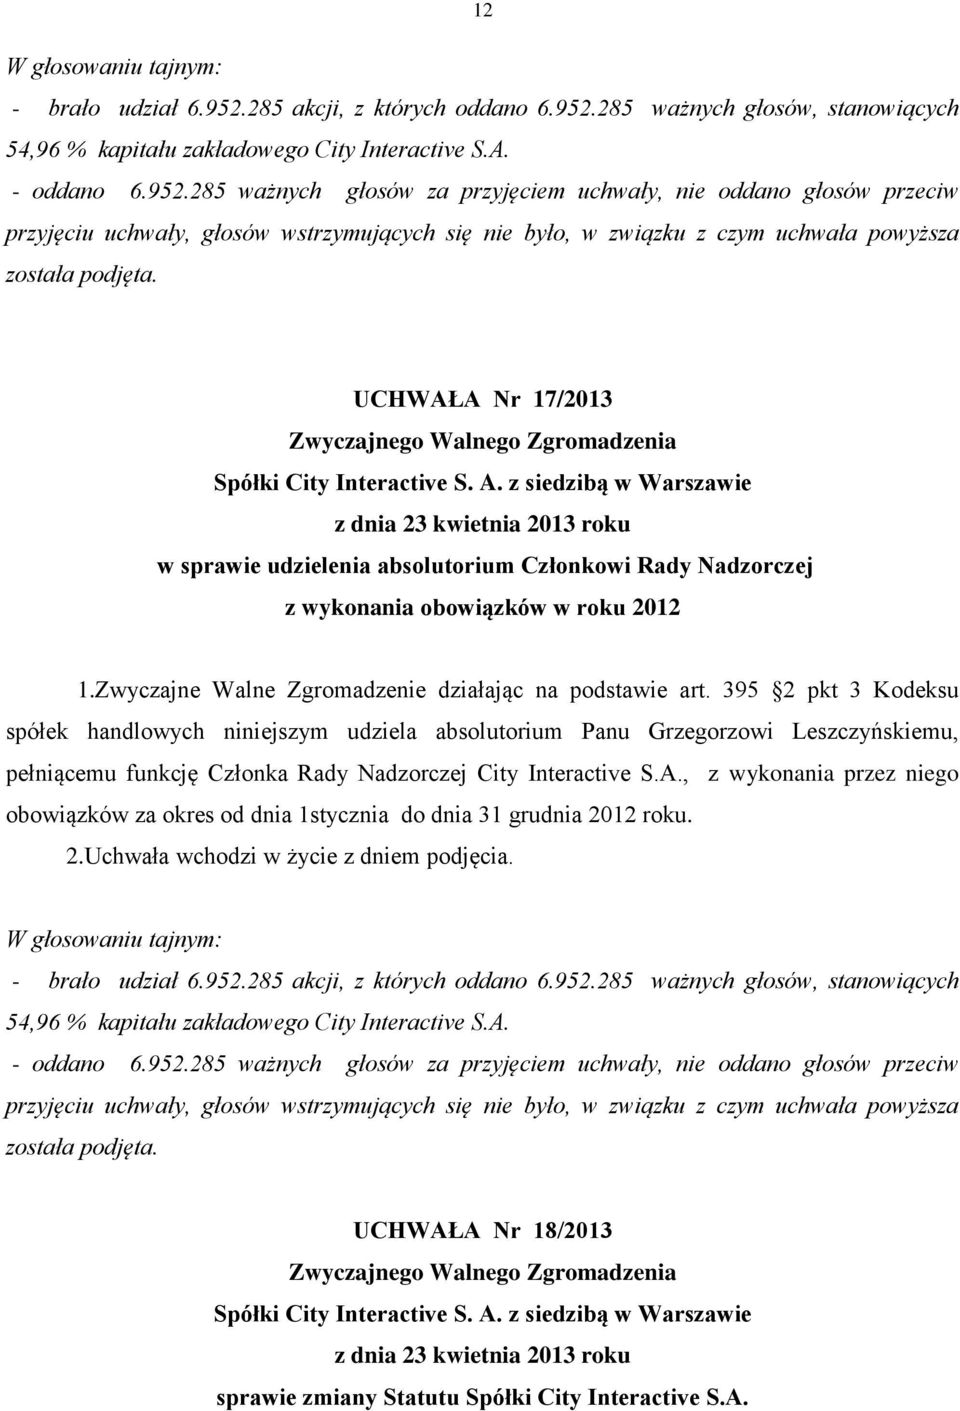 395 2 pkt 3 Kodeksu spółek handlowych niniejszym udziela absolutorium Panu Grzegorzowi Leszczyńskiemu, pełniącemu funkcję